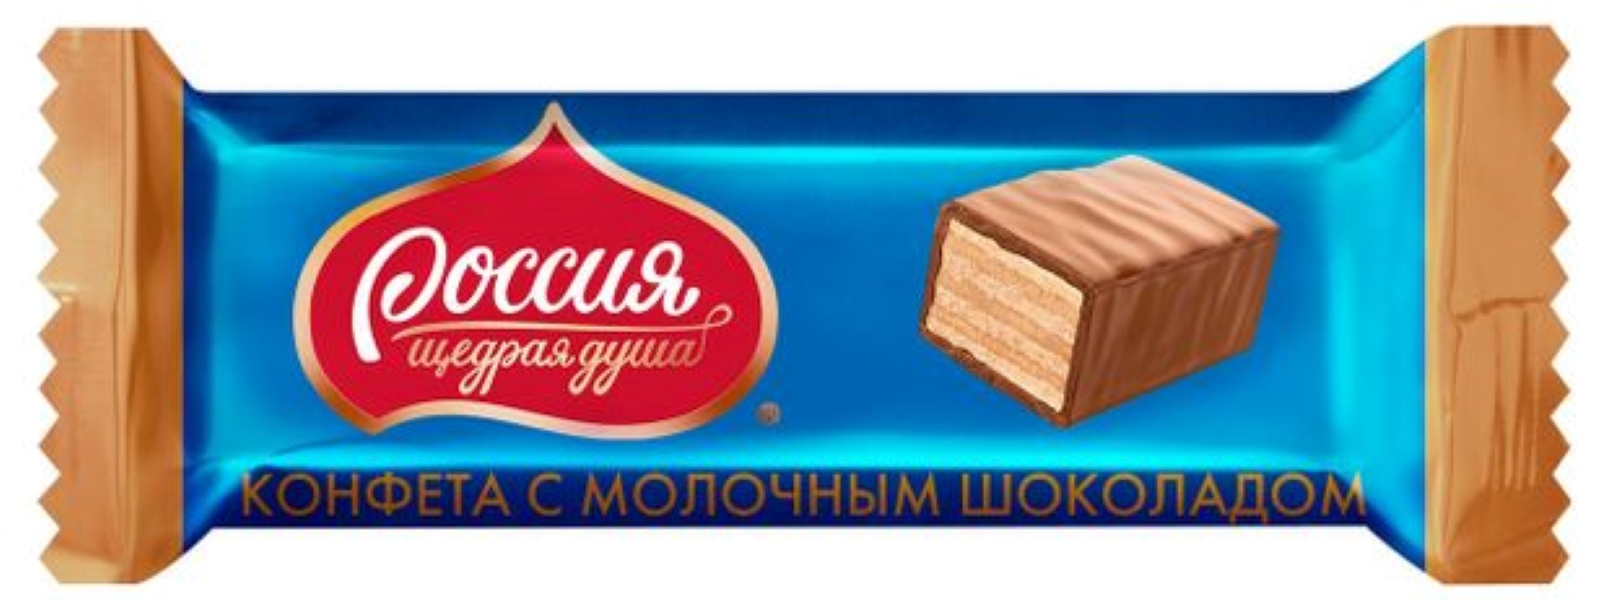 Россия конфеты щедрая душа шоколадные весовые